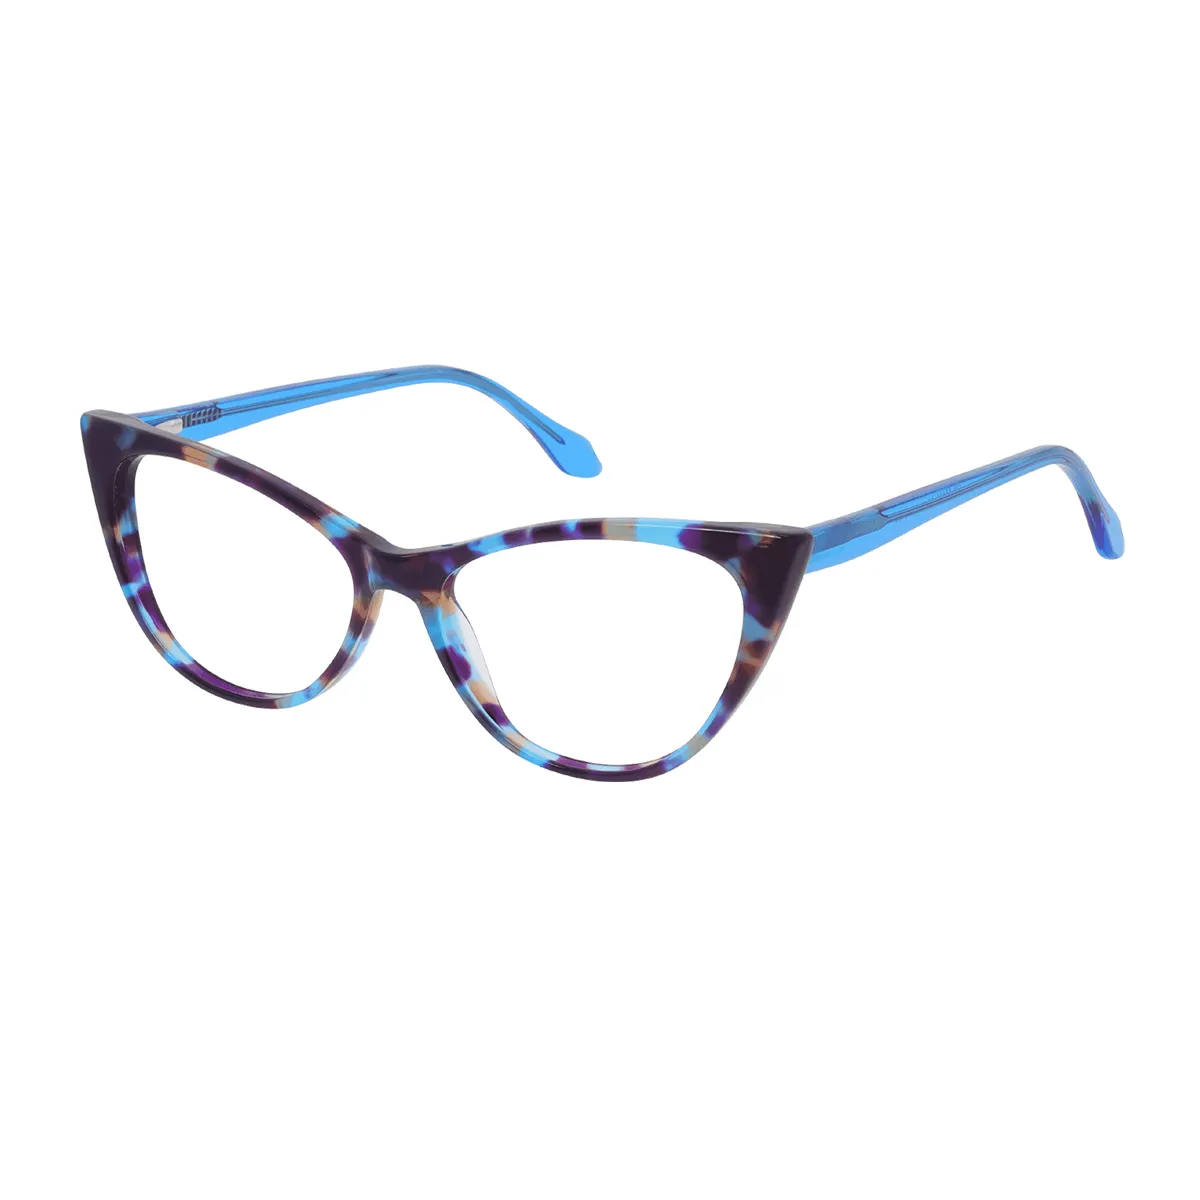 Fashion Cat-eye Tortoiseshell-Blue Glasses for Women